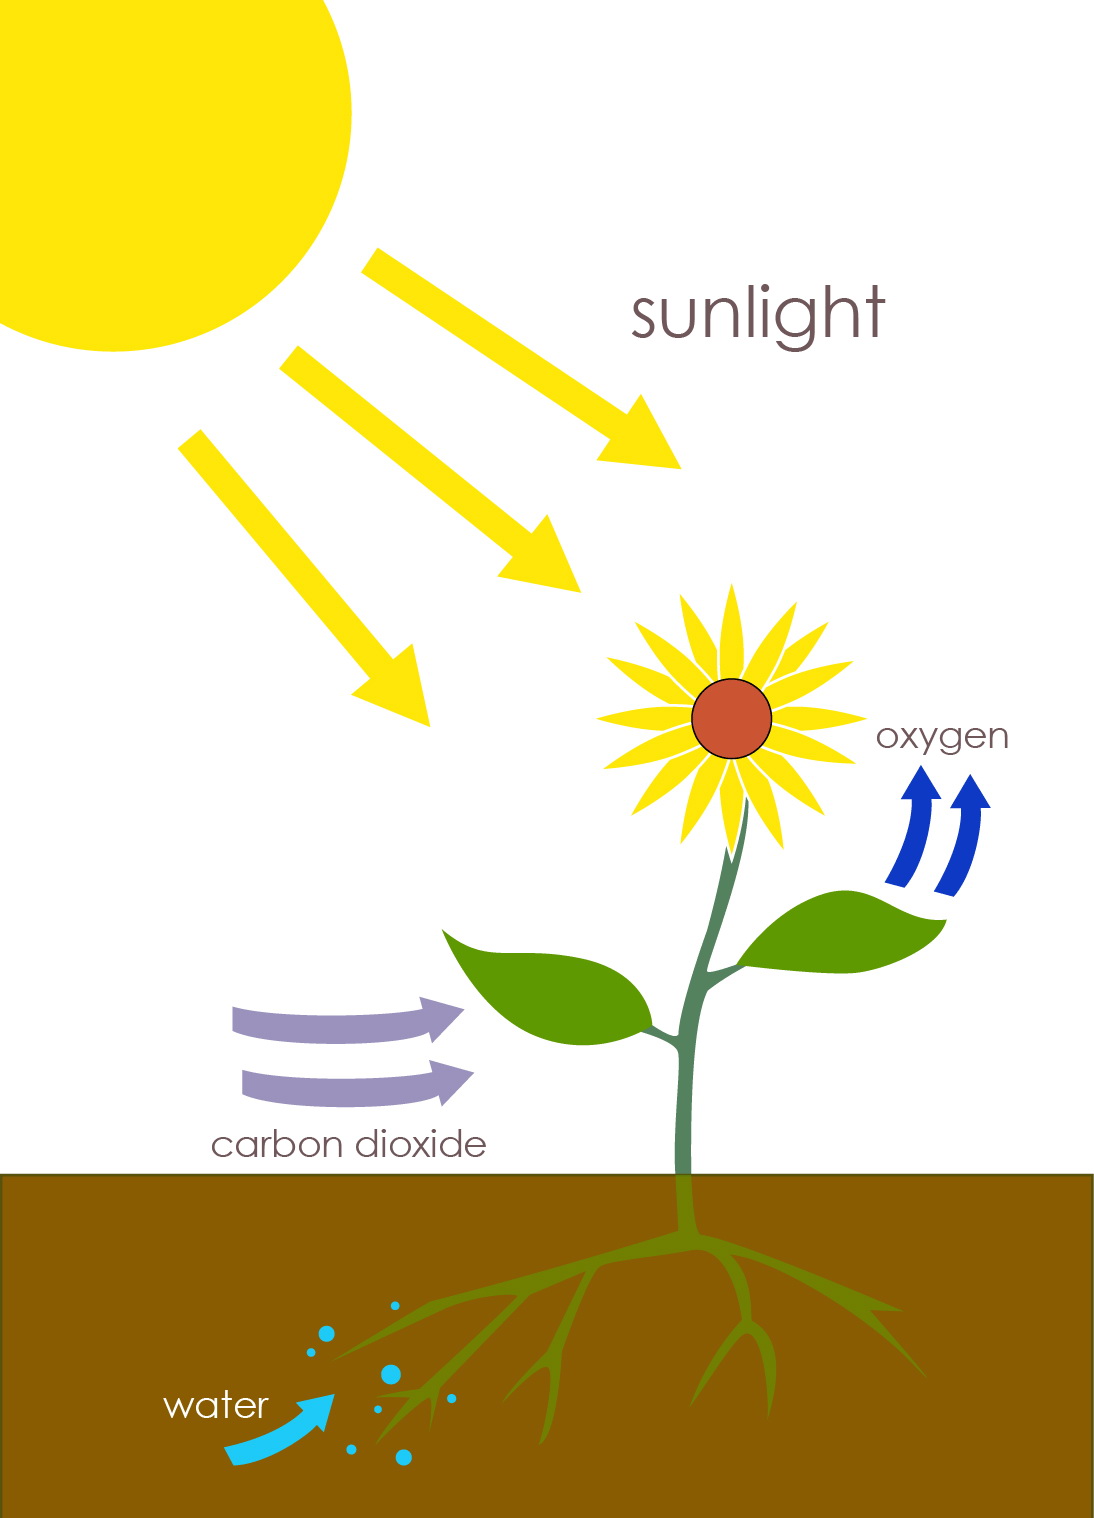 图7:这幅漫画说明了植物的光合作用的过程。植物“吃”阳光、二氧化碳和水并产生糖类和碳水化合物都存储在产生,或使用,植物和自由氧作为代谢产物。…